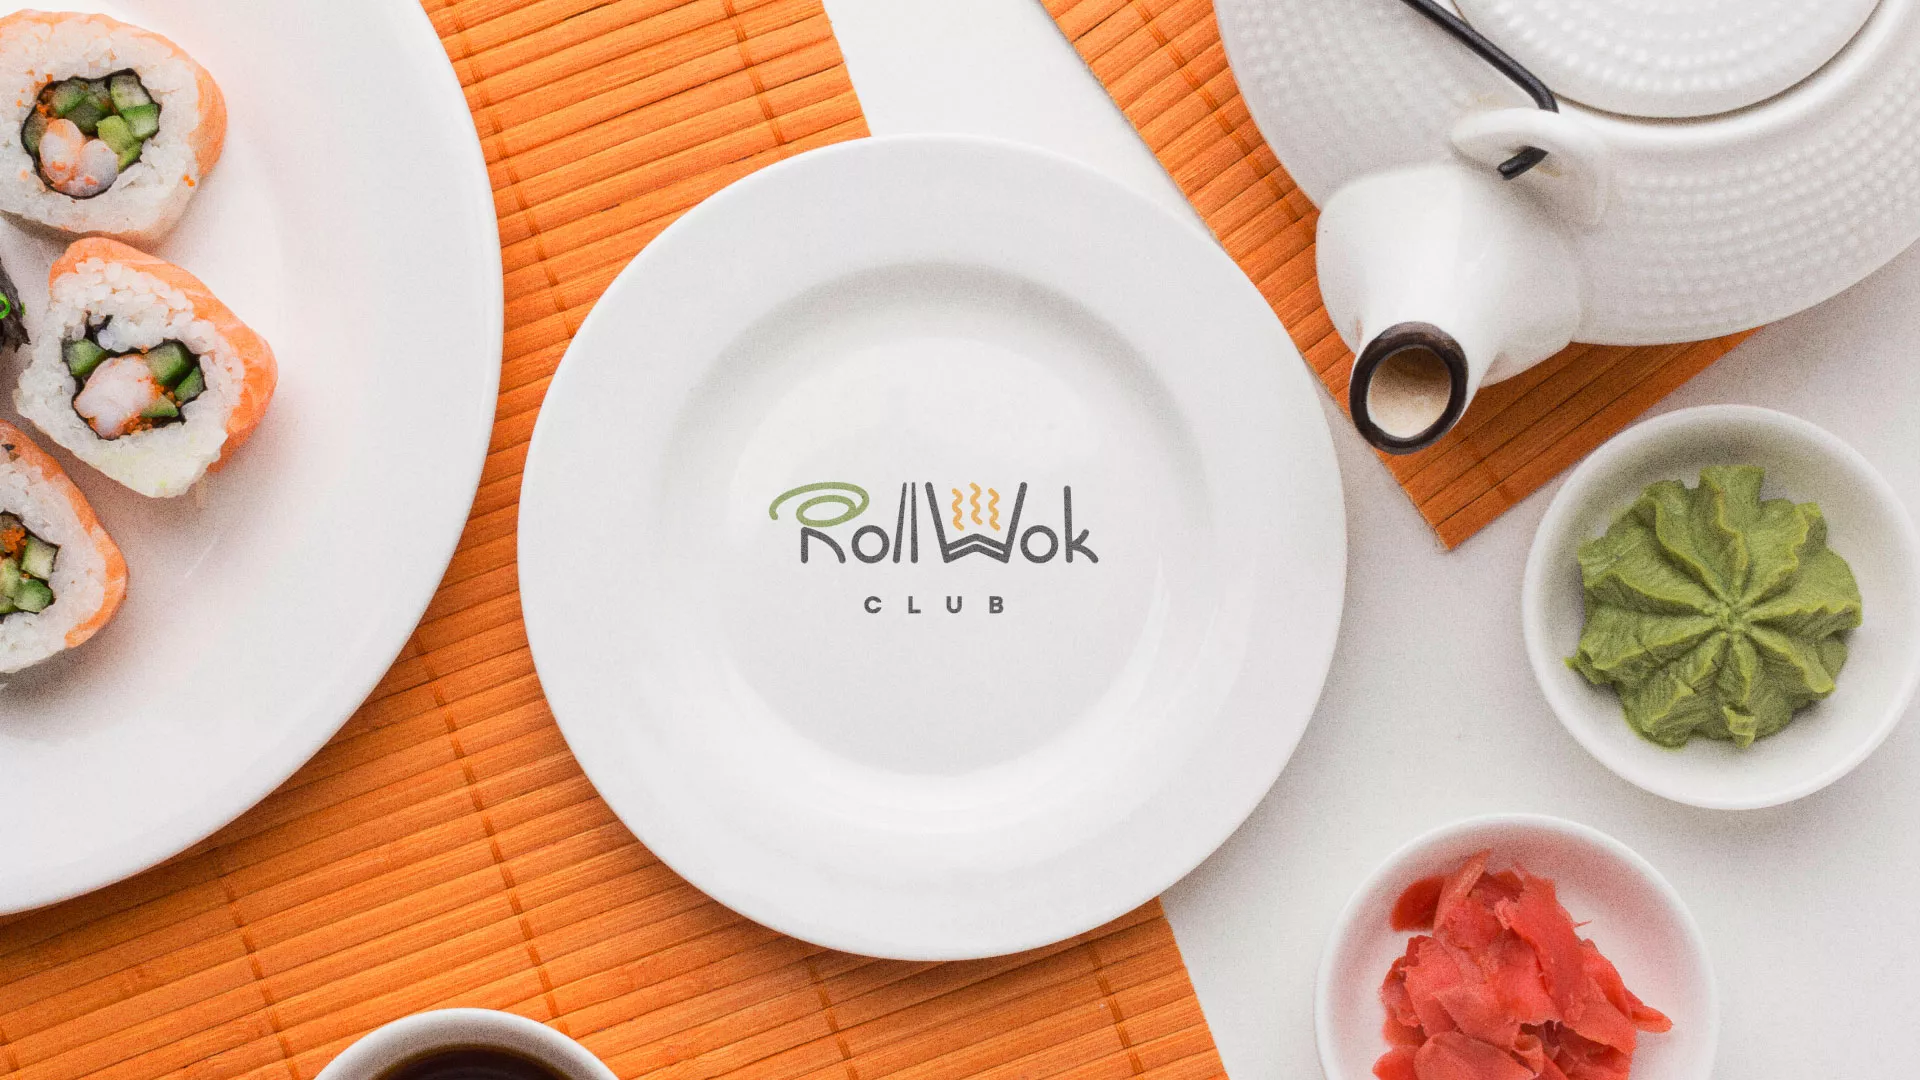 Разработка логотипа и фирменного стиля суши-бара «Roll Wok Club» в Новосокольниках